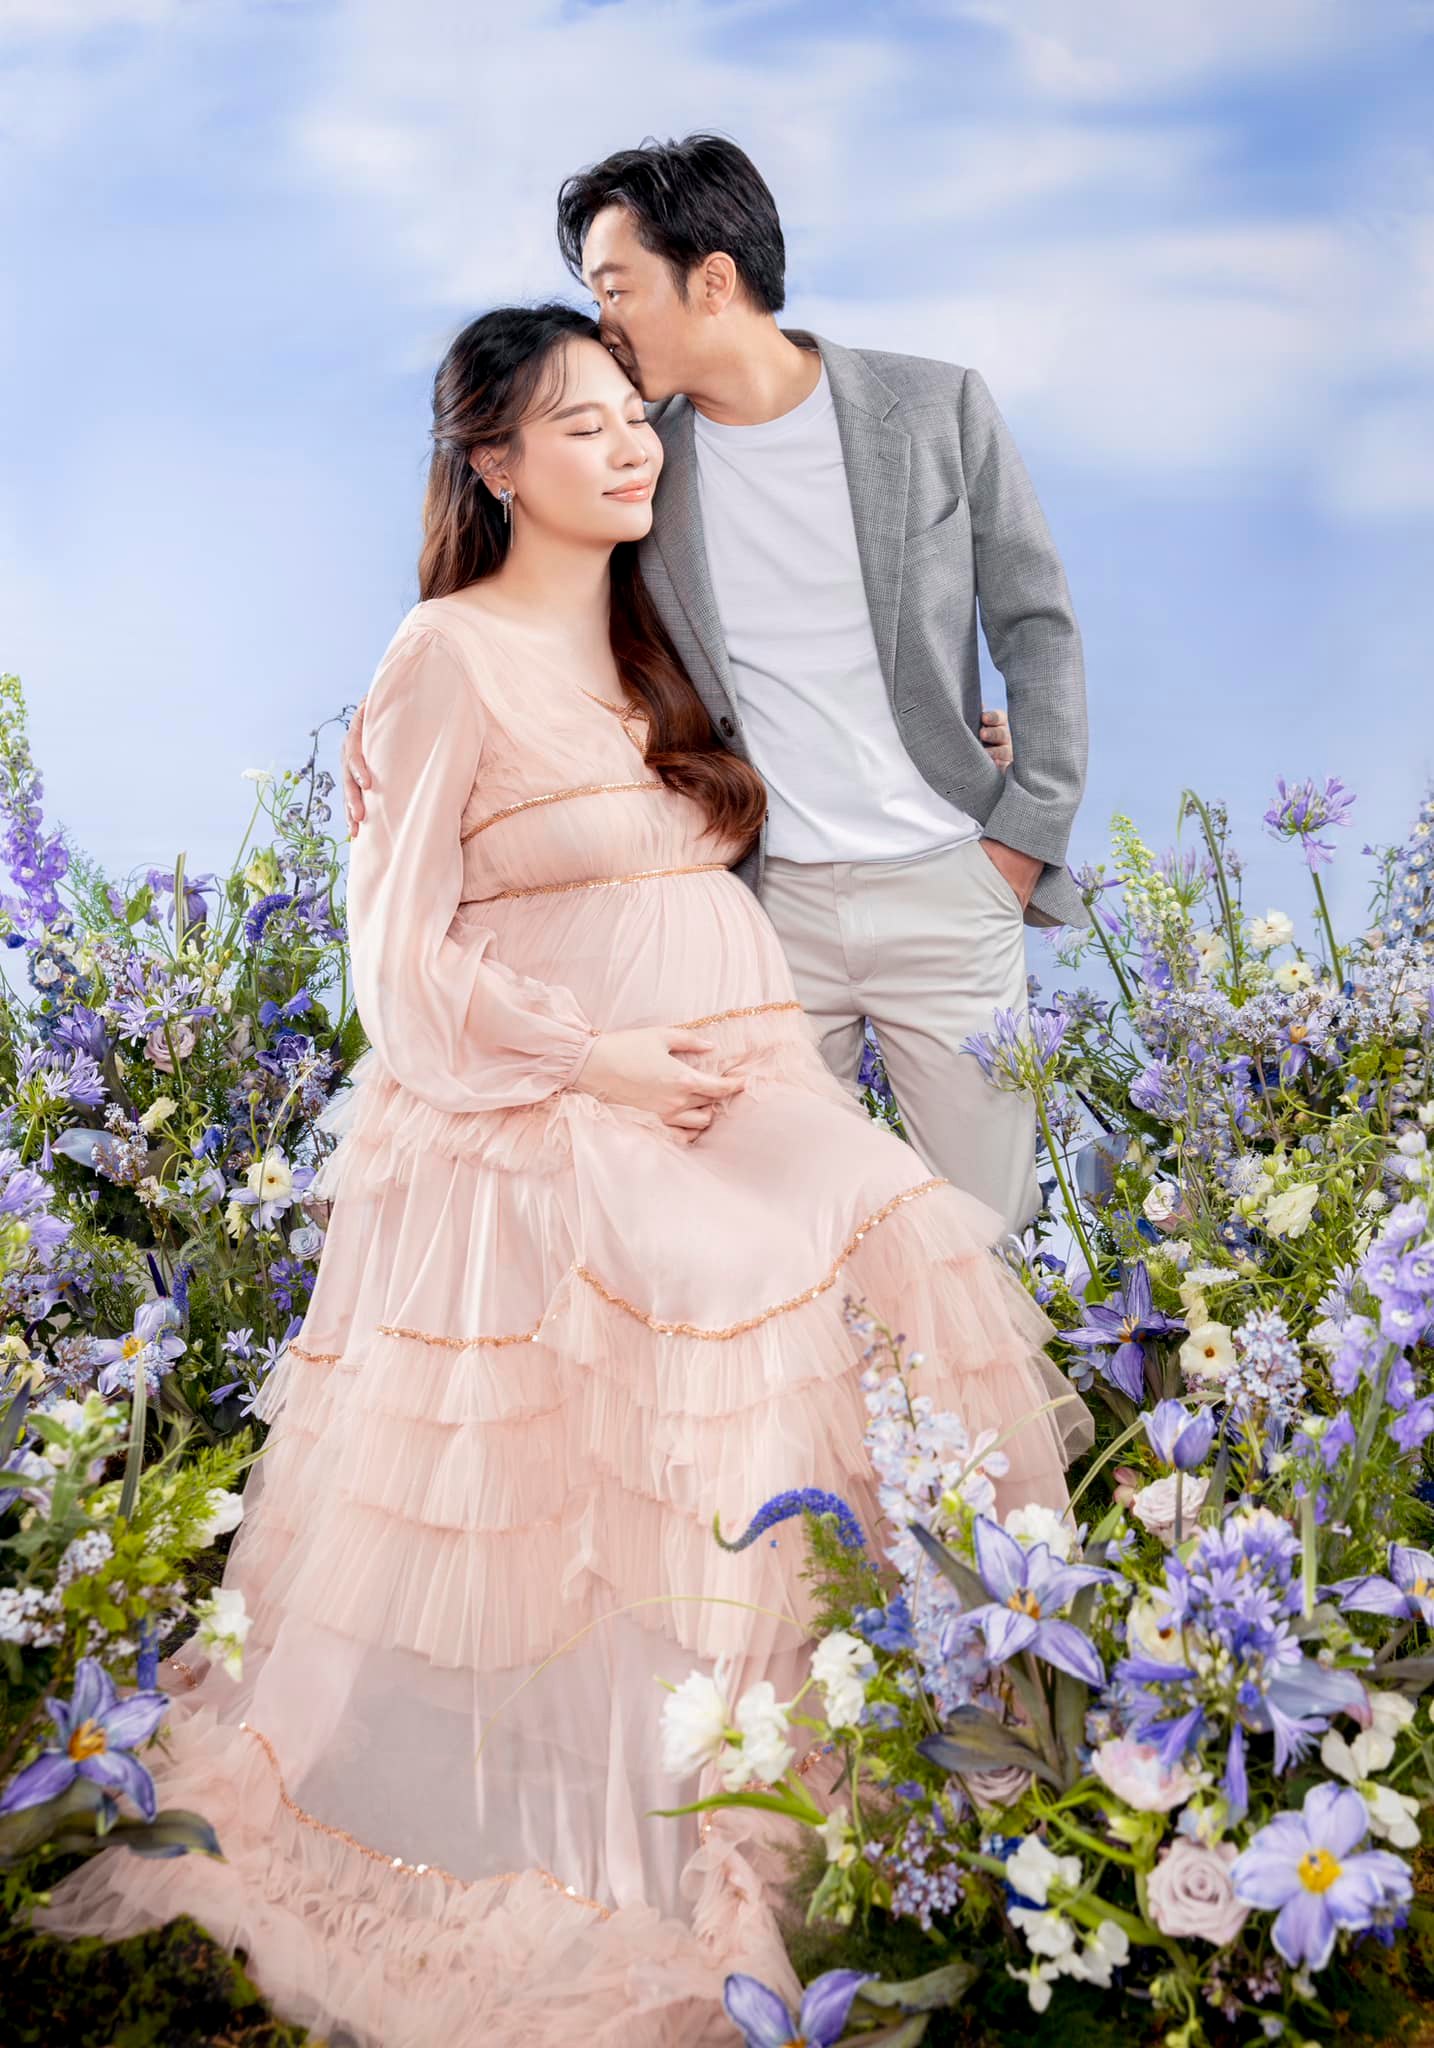 Đàm Thu Trang lần 2 mang thai: Vi vu ở Mỹ, chồng cưng chiều nhưng đây là điều khiến hội mẹ bầu 'xin vía' - Ảnh 11.